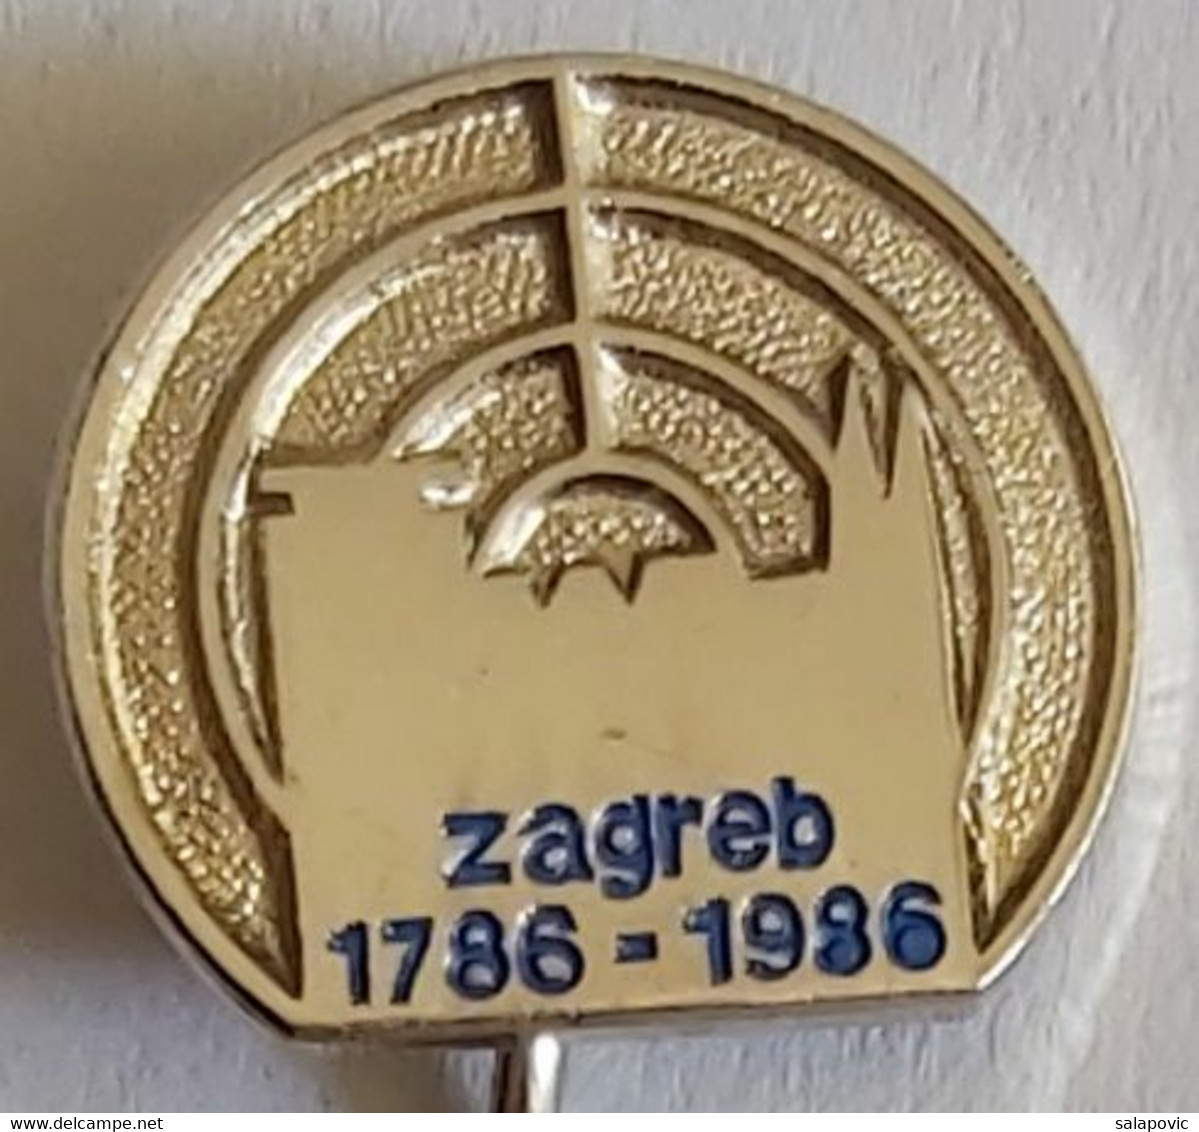 Zagreb 1786 - 1986 Croatia Archery Zagreb Shooting Association PIN A6/2 - Bogenschiessen